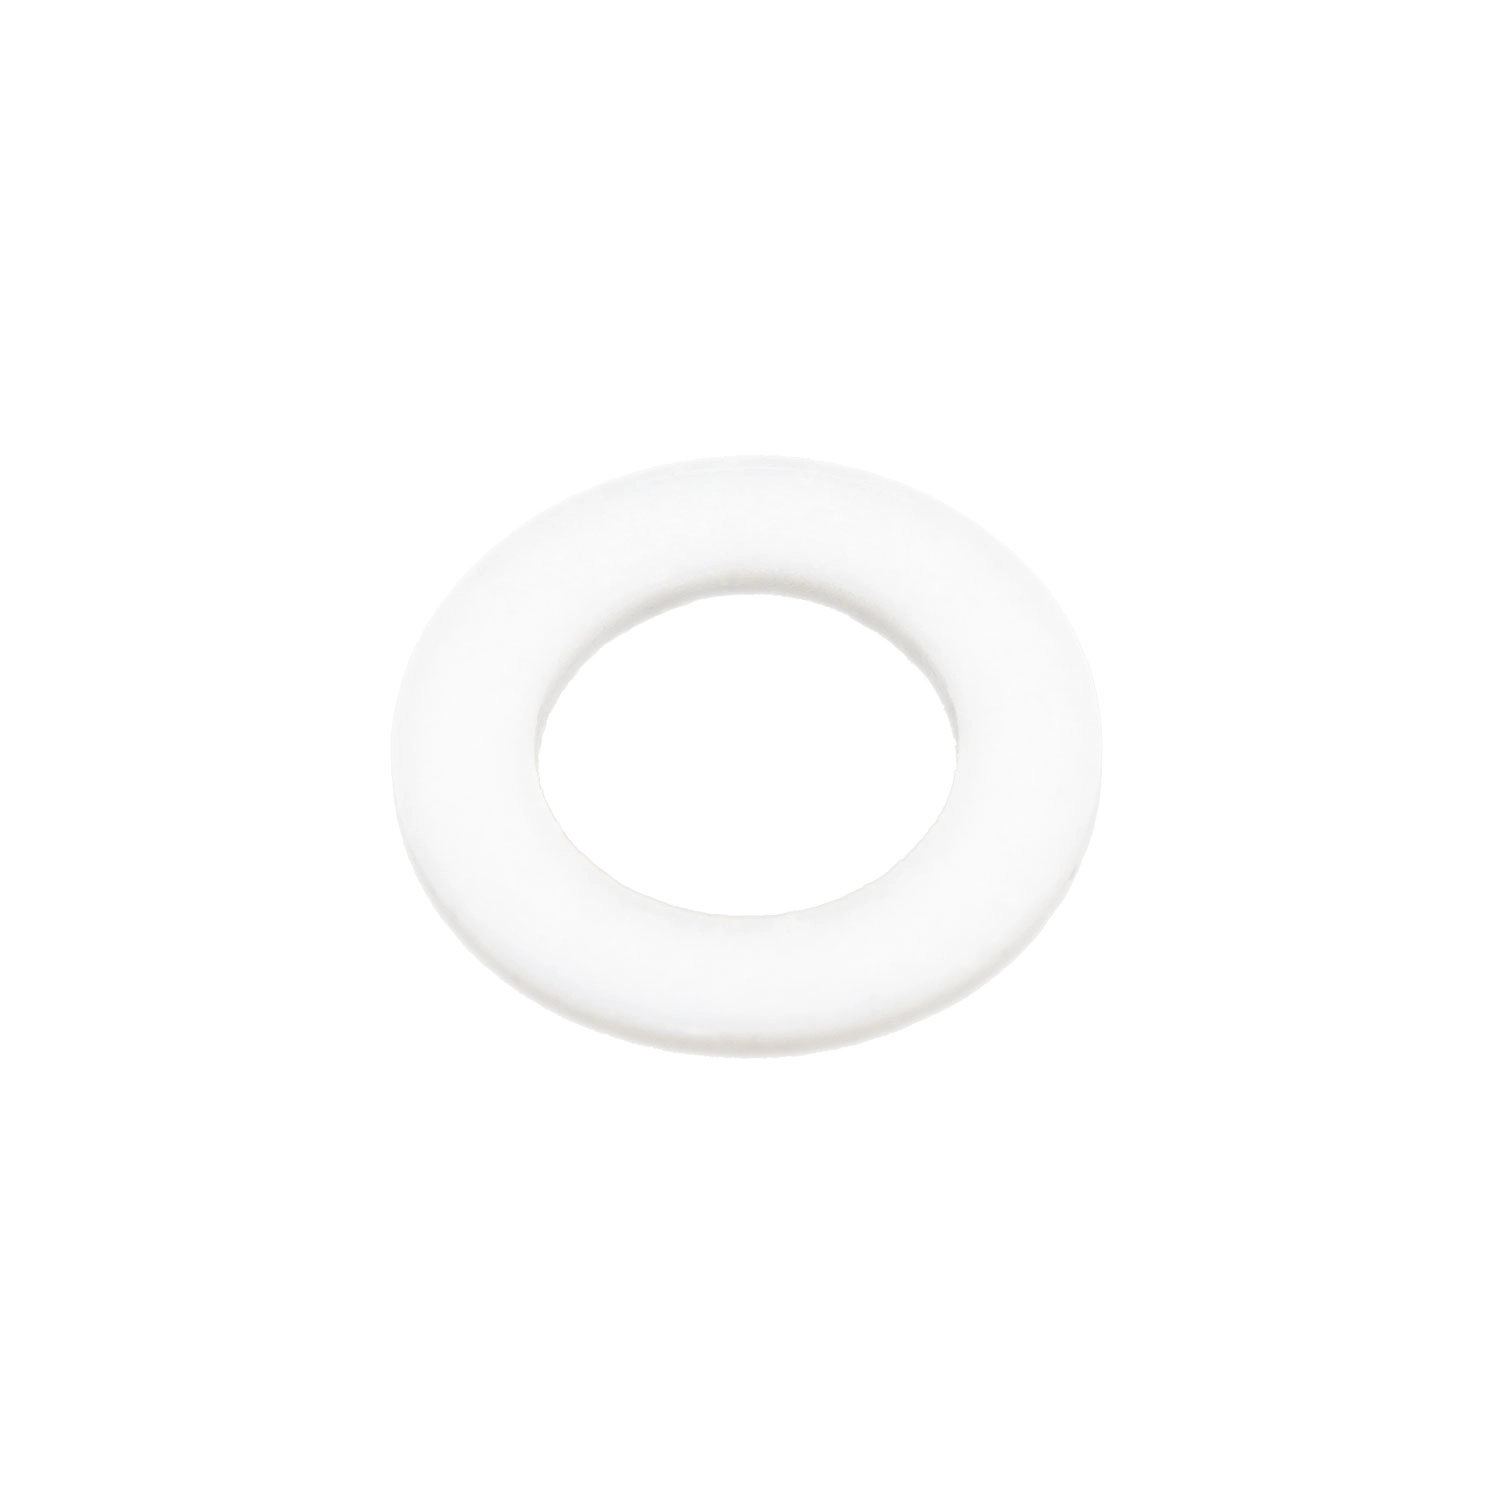 Washer / Unterlegscheibe 9 x 15 x 1mm - Weiß im günstigen Beutel » Inhalt  pro Beutel: 50 Stück